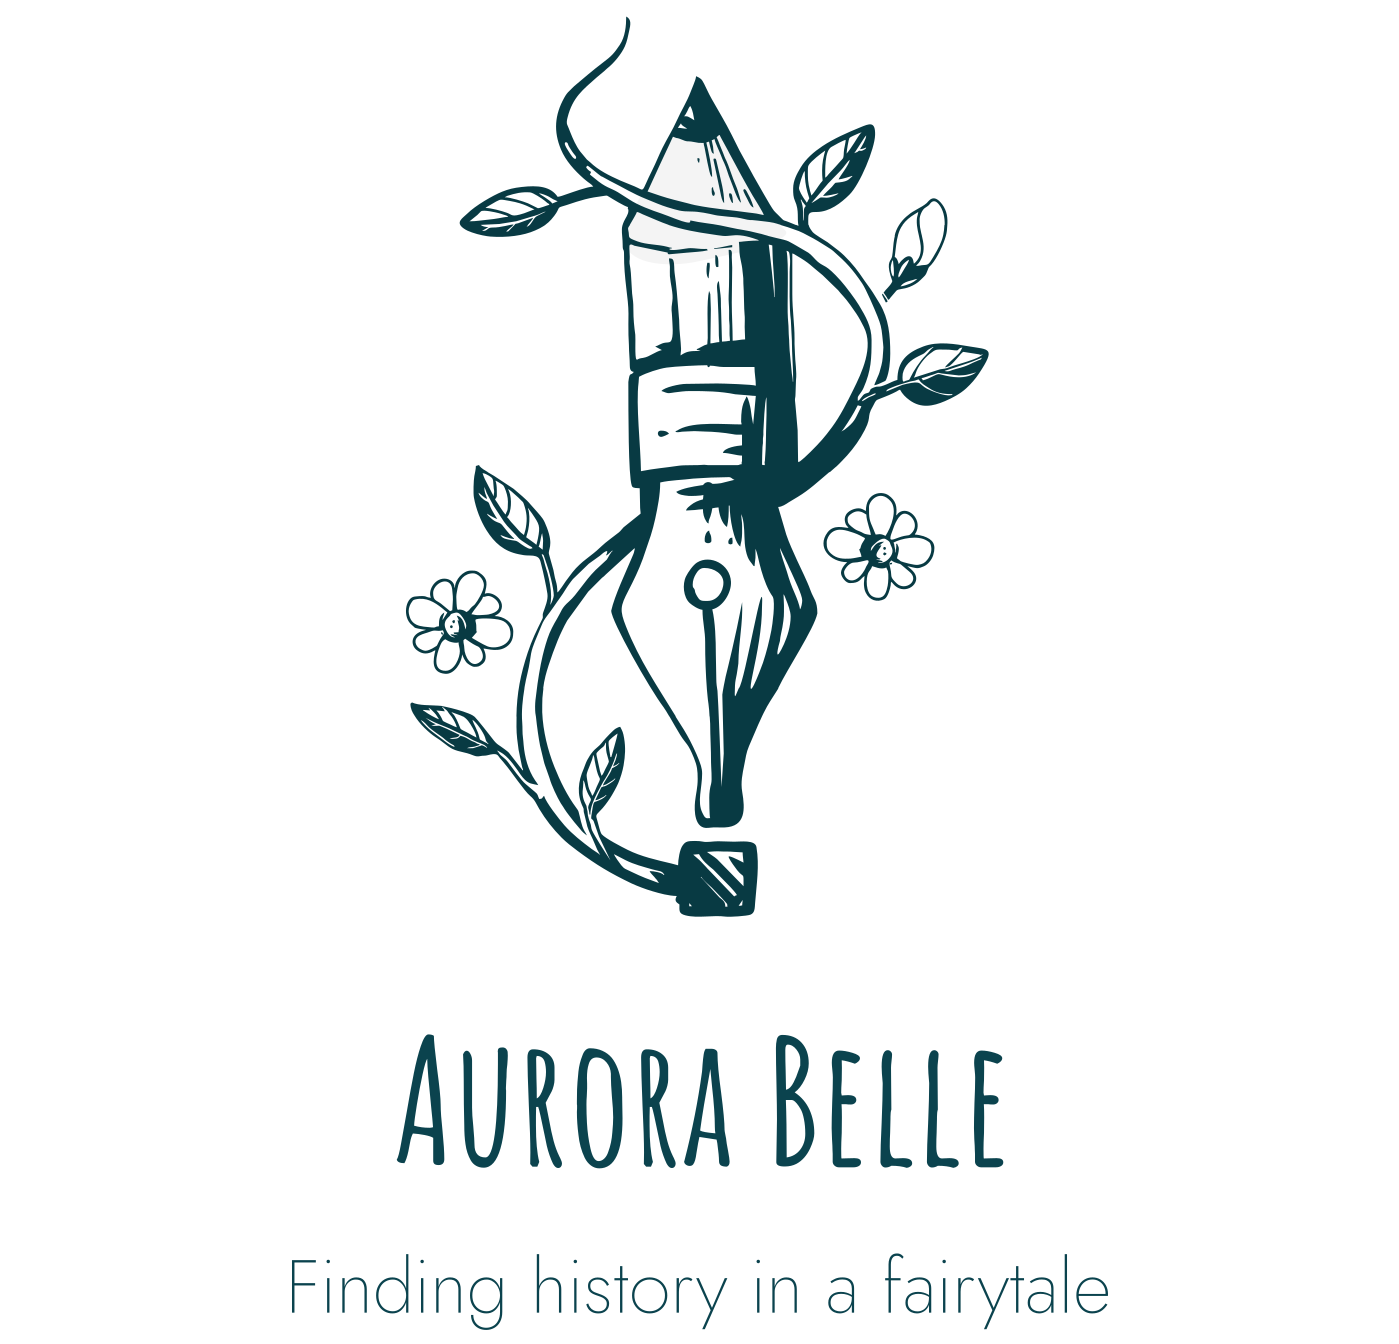 Author Aurora Belle